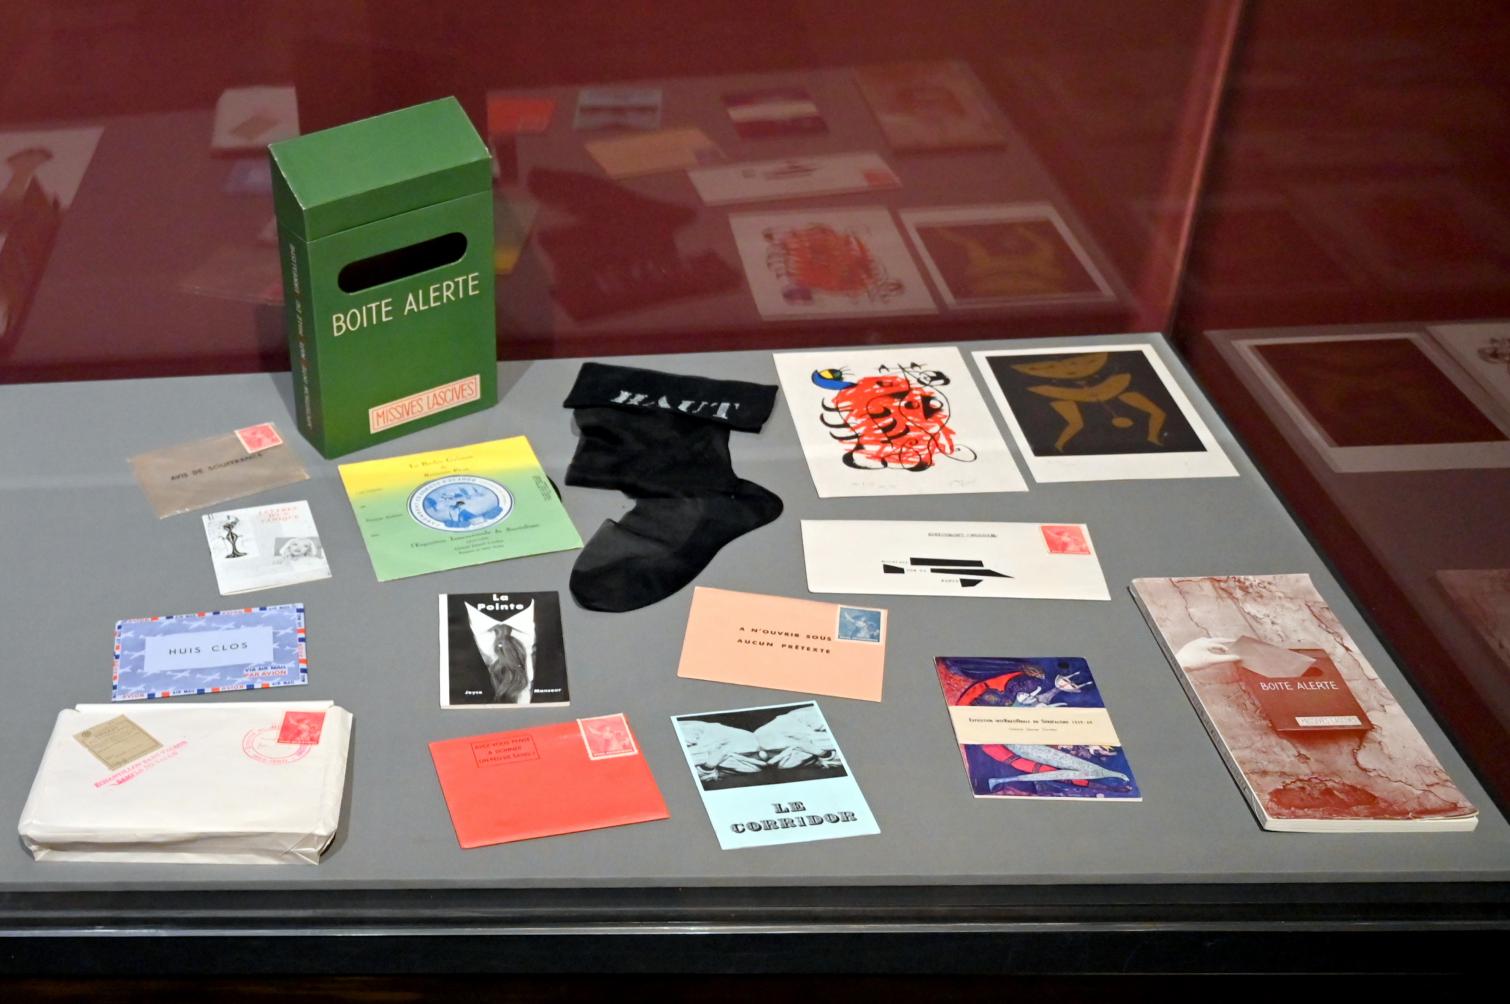 Mimi Parent (1959), Auswahl von Boîte alerte (Box in Alarmbereitschaft), London, Tate Modern, Ausstellung "Surrealism Beyond Borders" vom 24.02.-29.08.2022, Saal 6, 1959, Bild 1/2